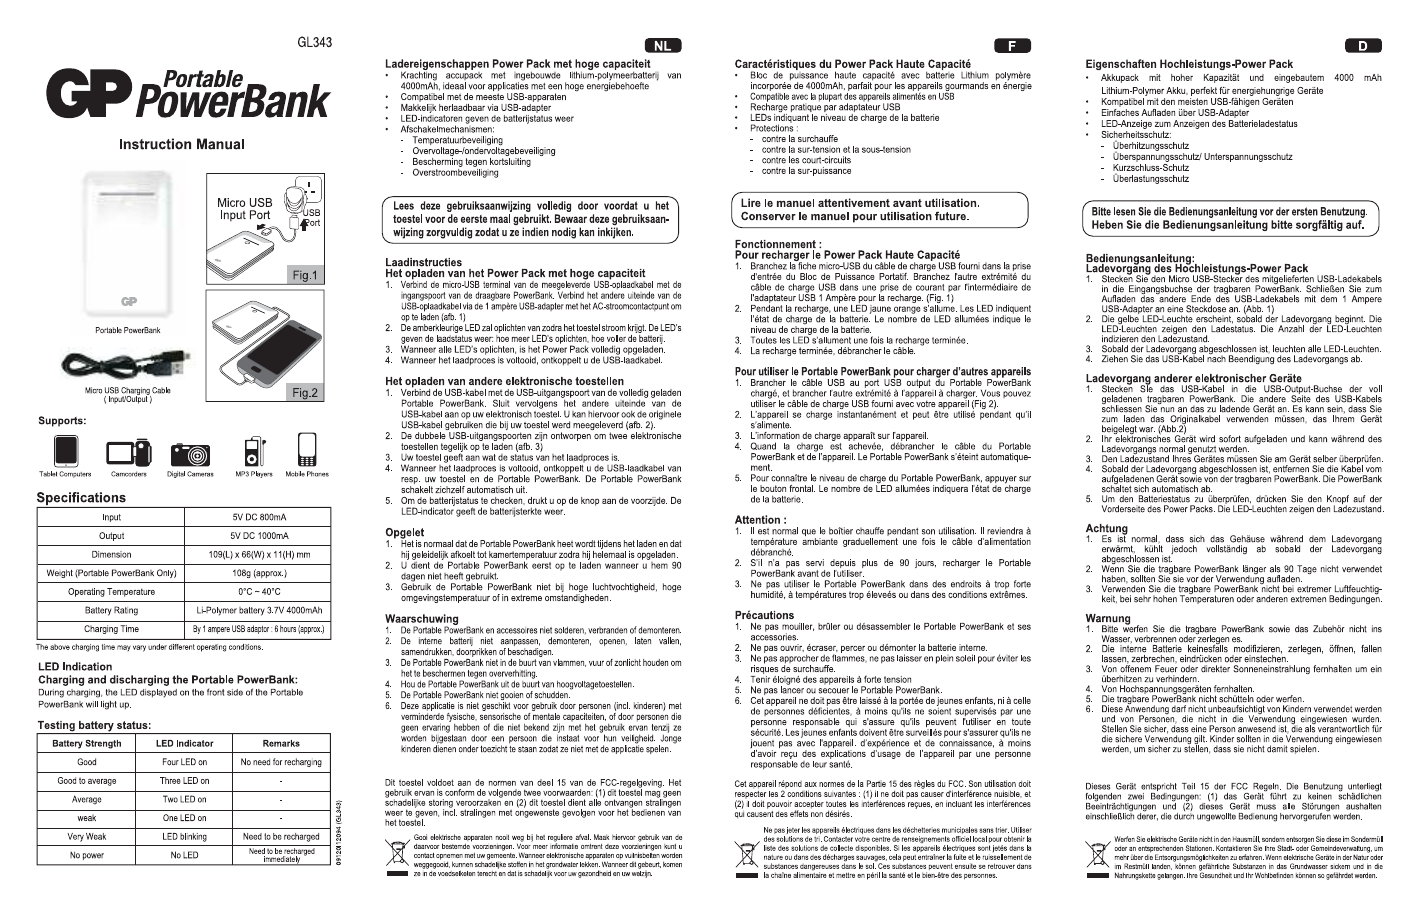 overschot voordeel Leeds Handleiding GP GL343 Portable Power bank (pagina 1 van 1) (Nederlands,  Duits, Frans)